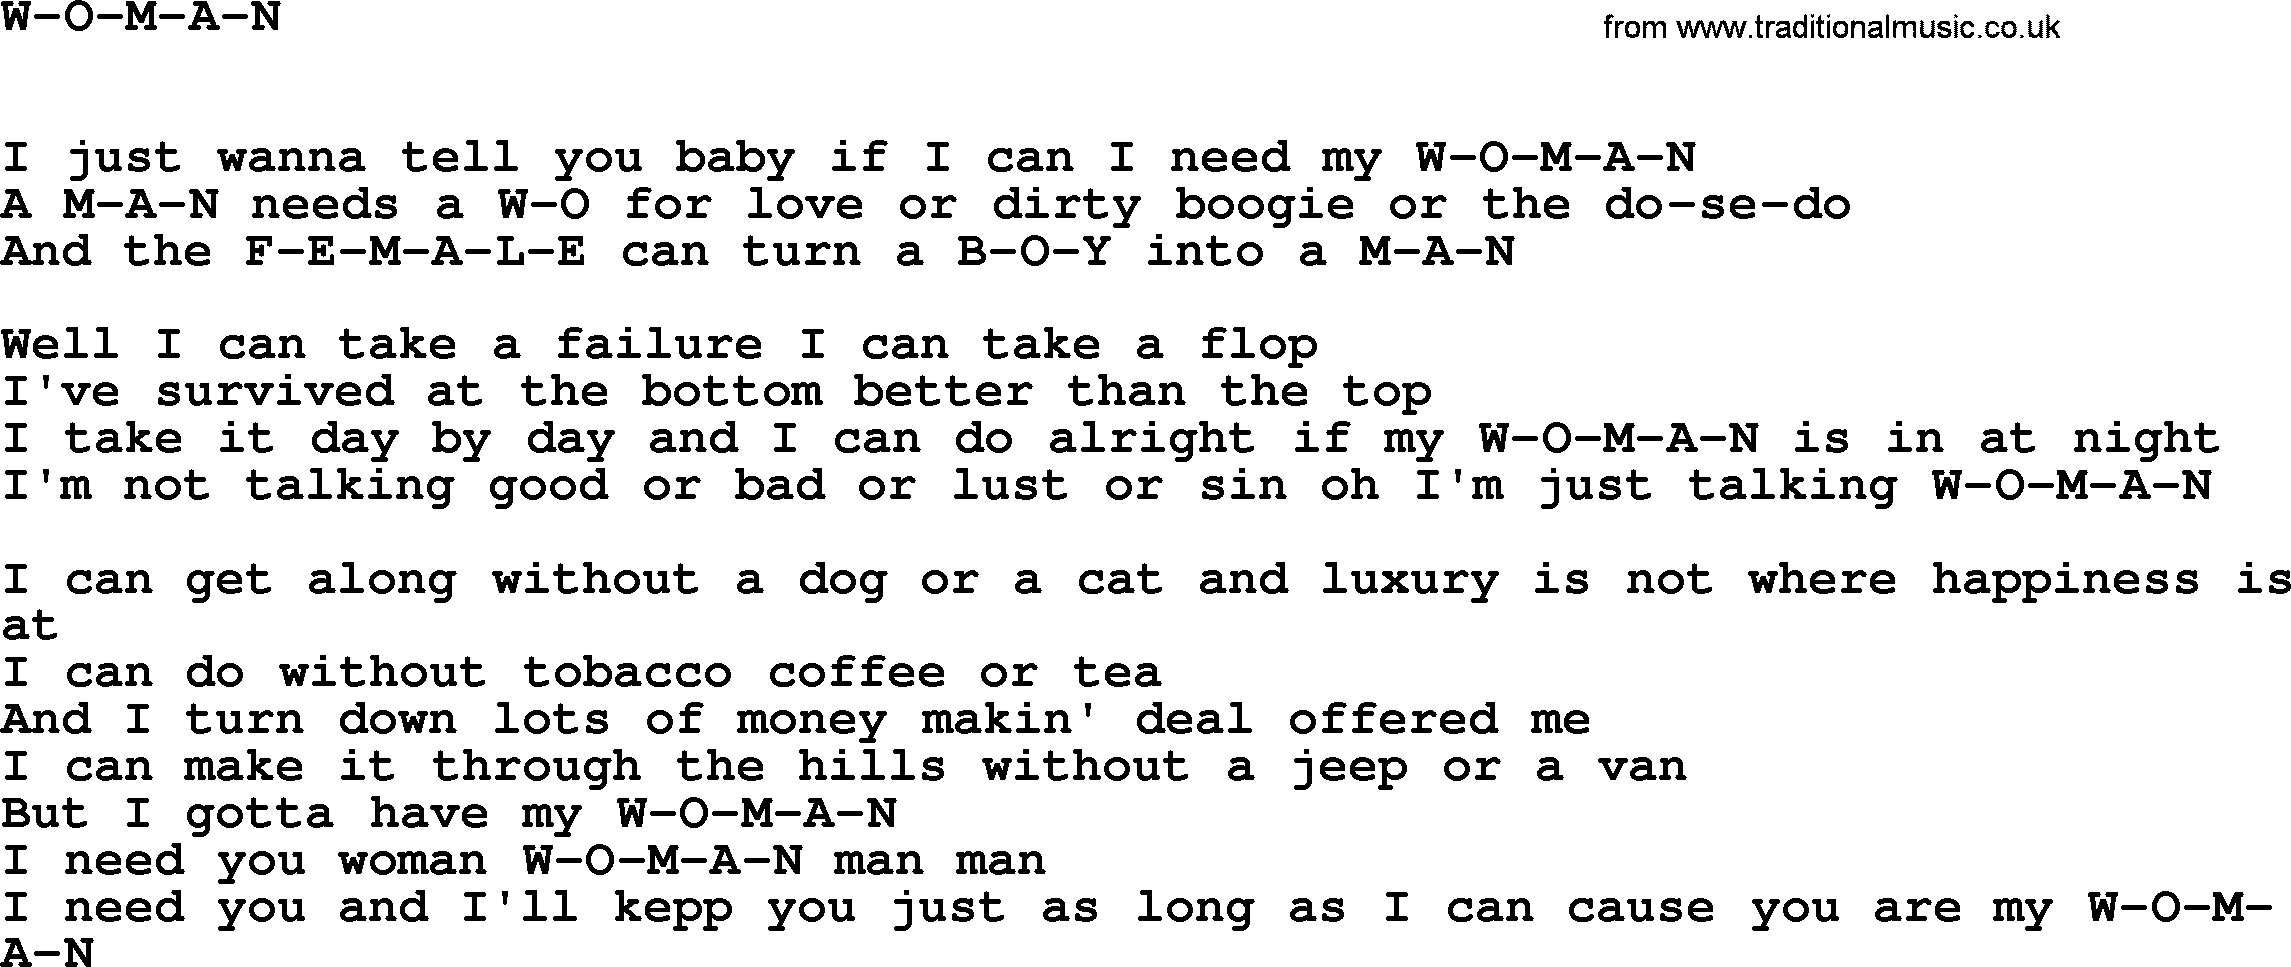 Johnny Cash song W-o-m-a-n.txt lyrics